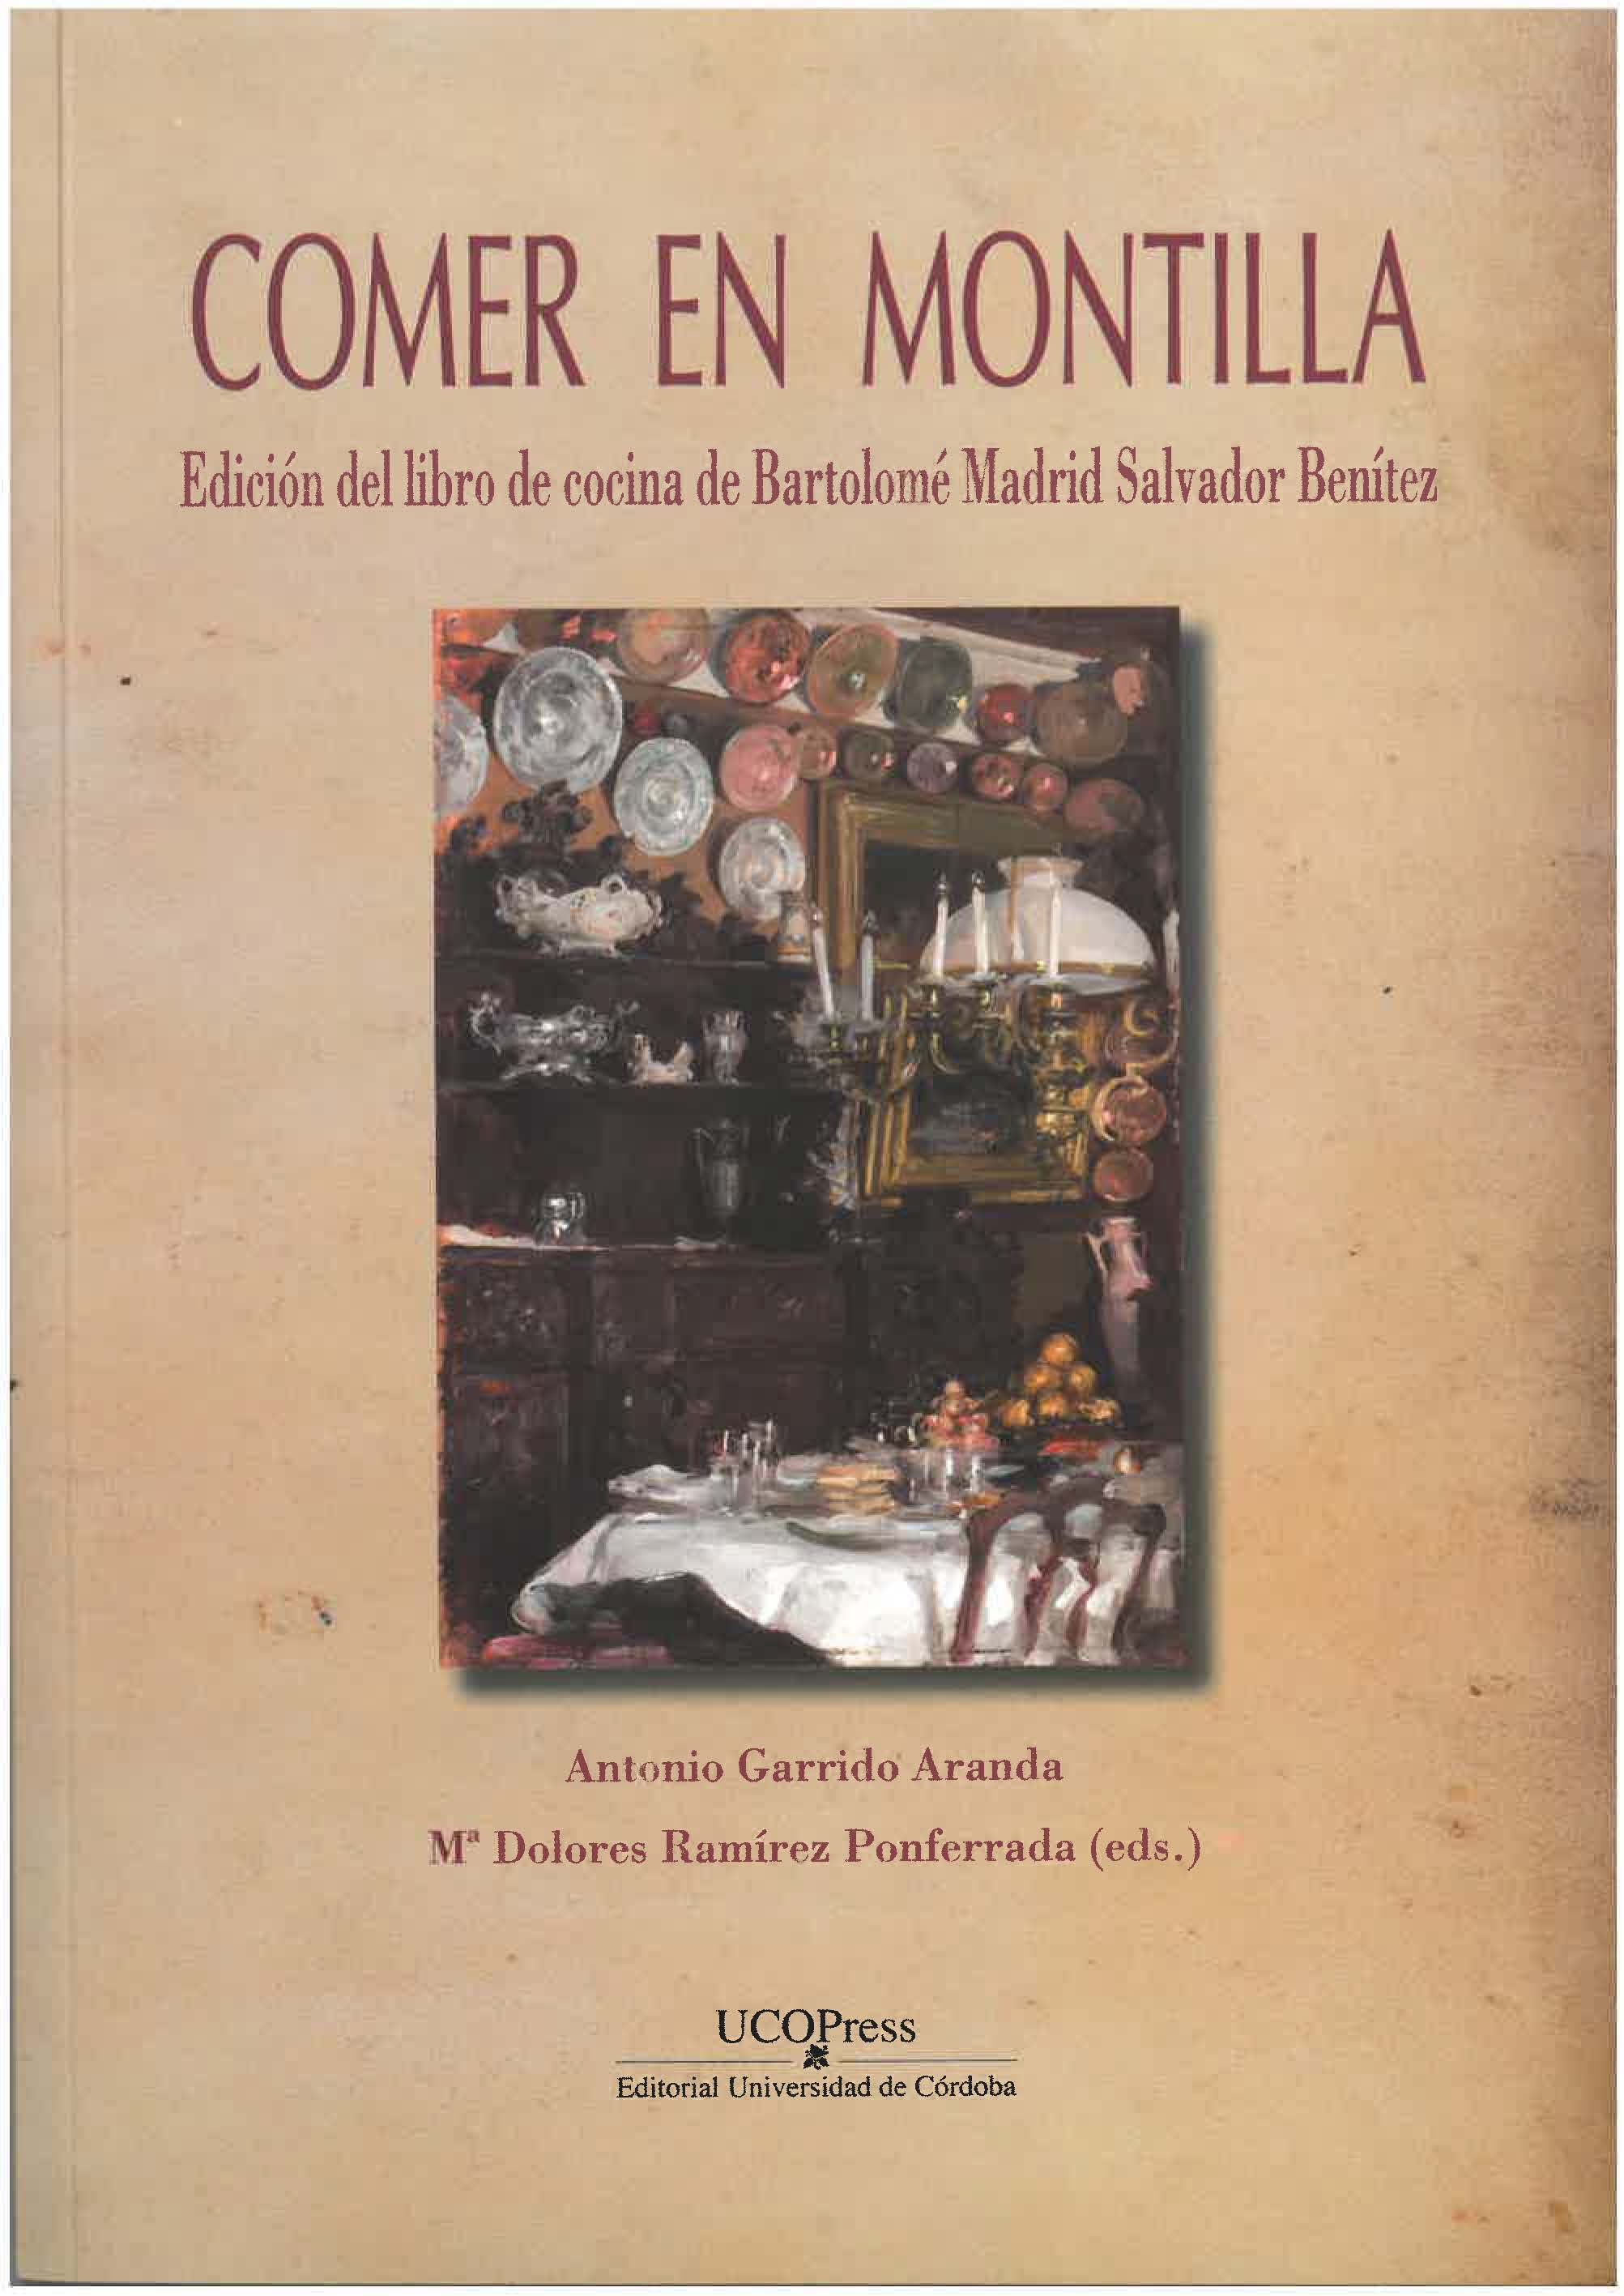 Imagen de portada del libro Comer en Montilla